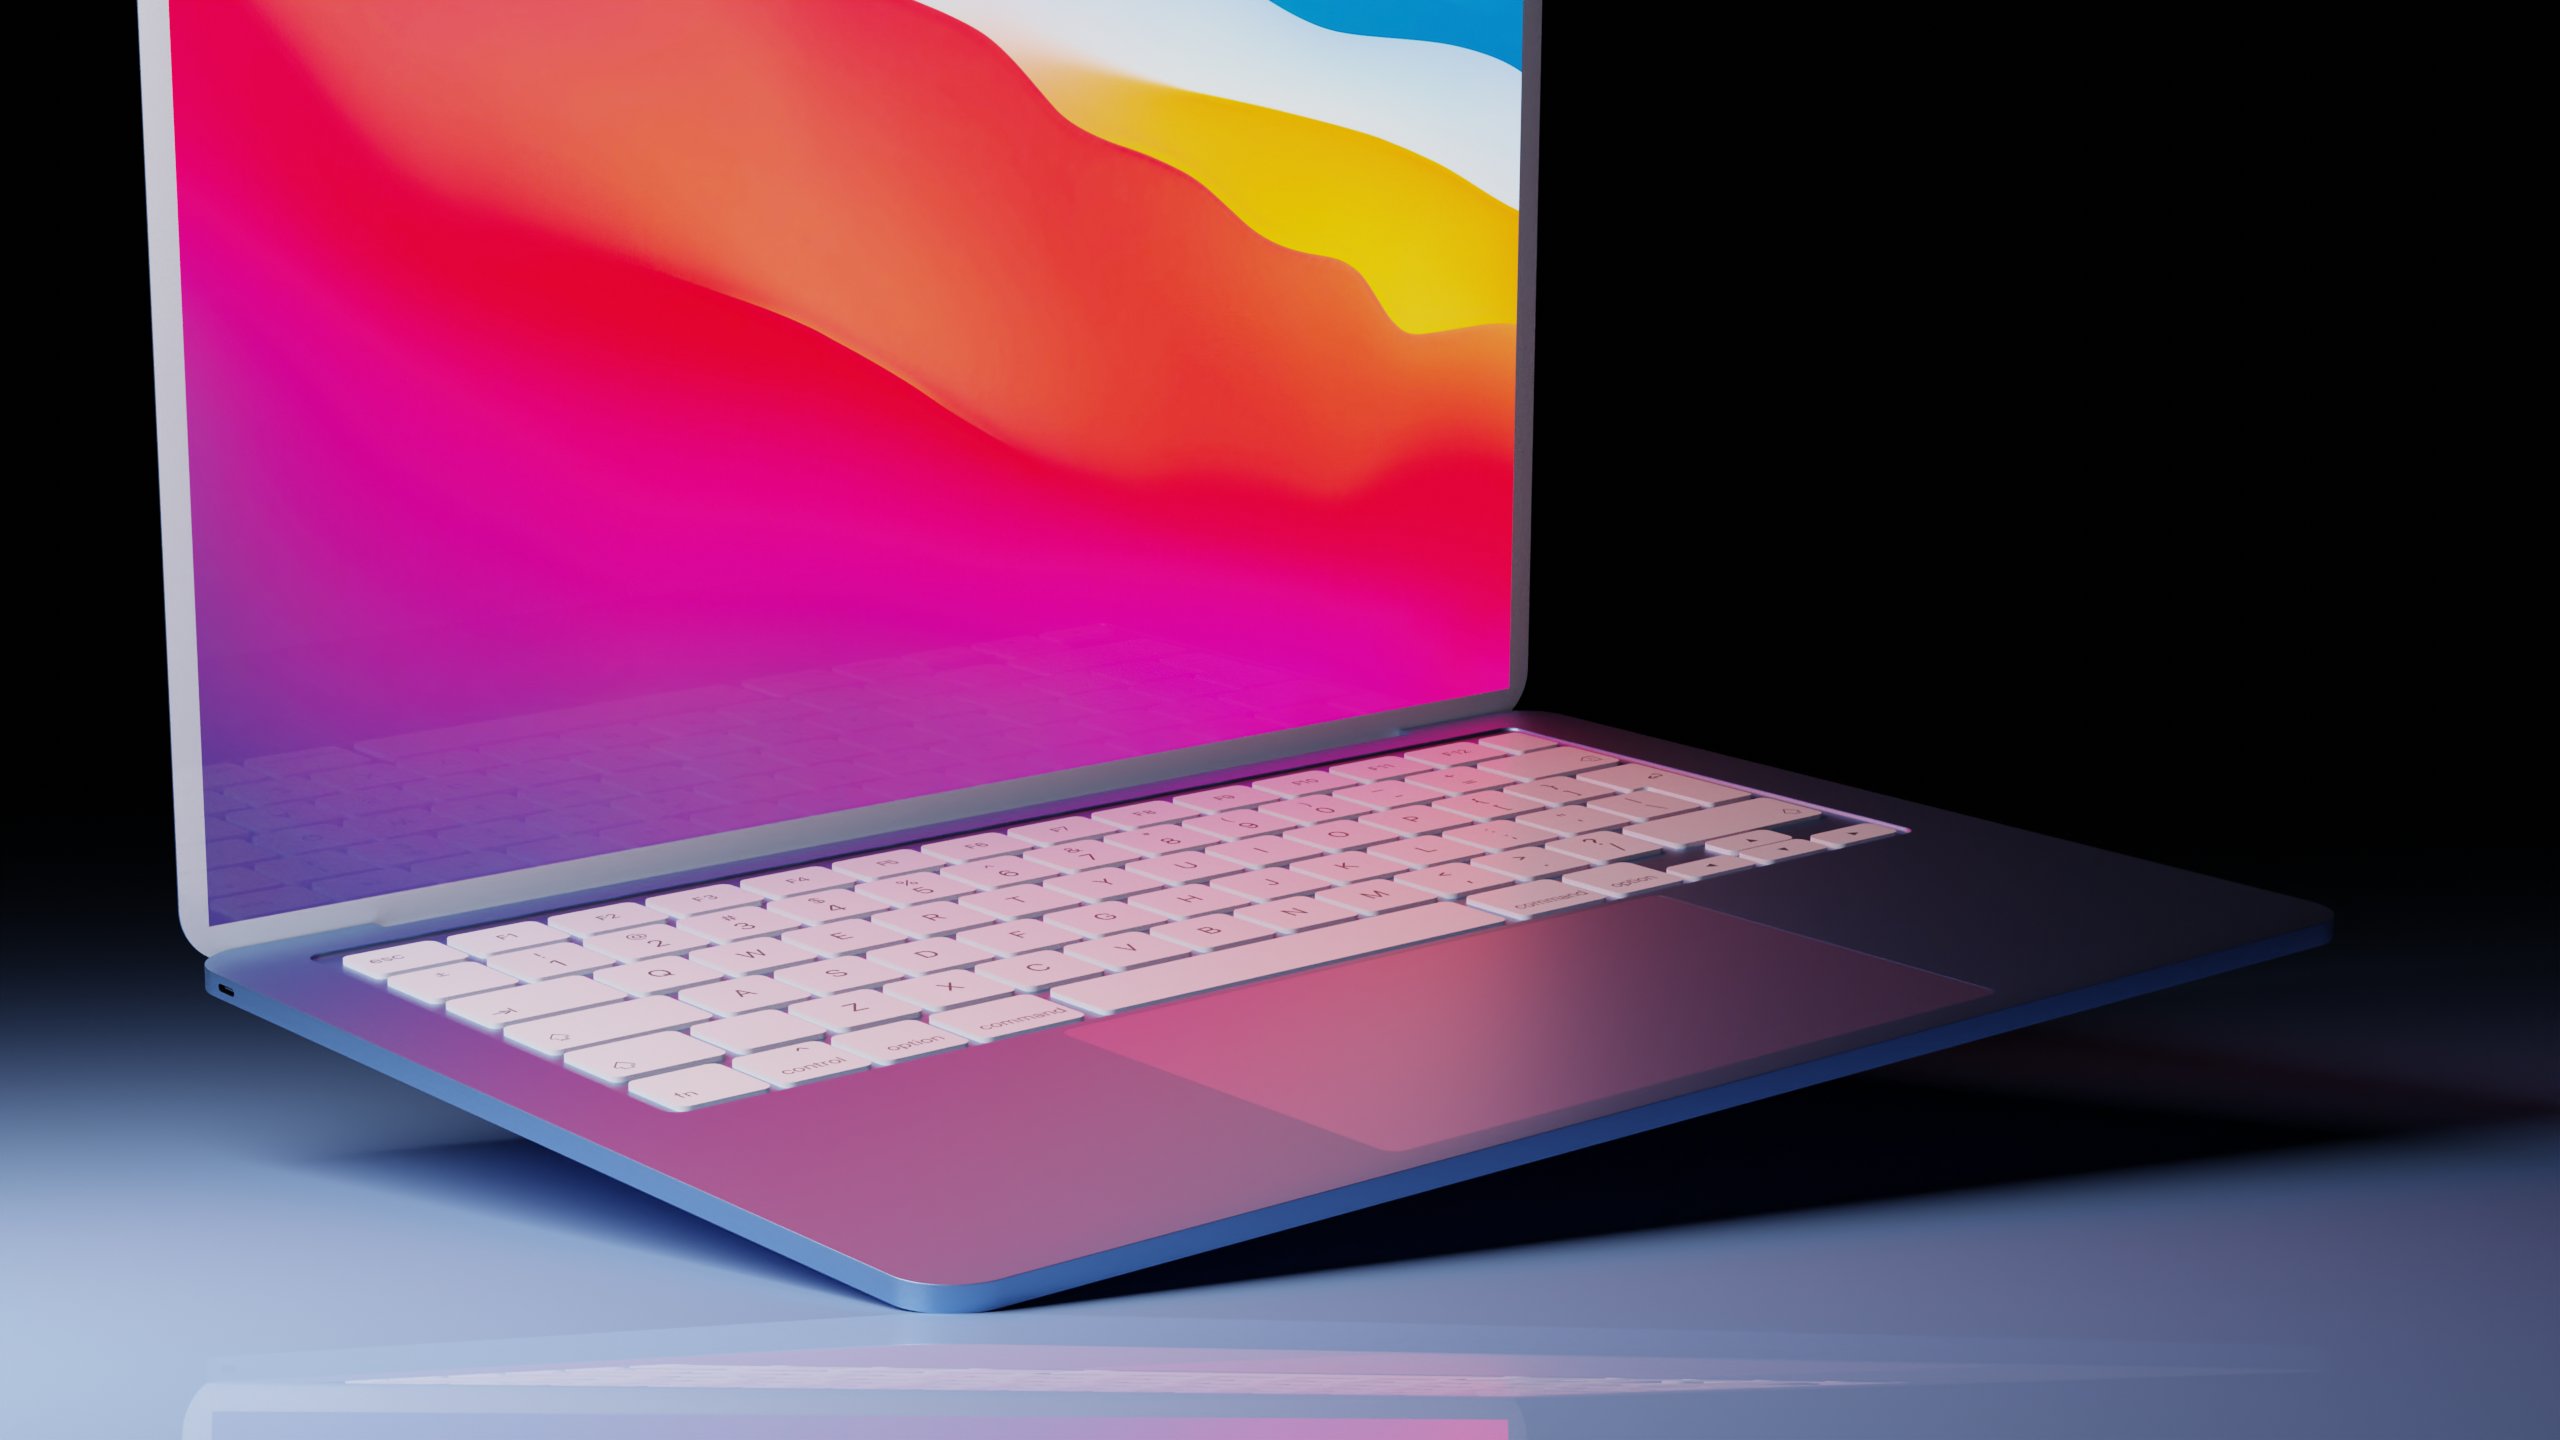 Появился концепт MacBook Air в стиле нового iMac с M1